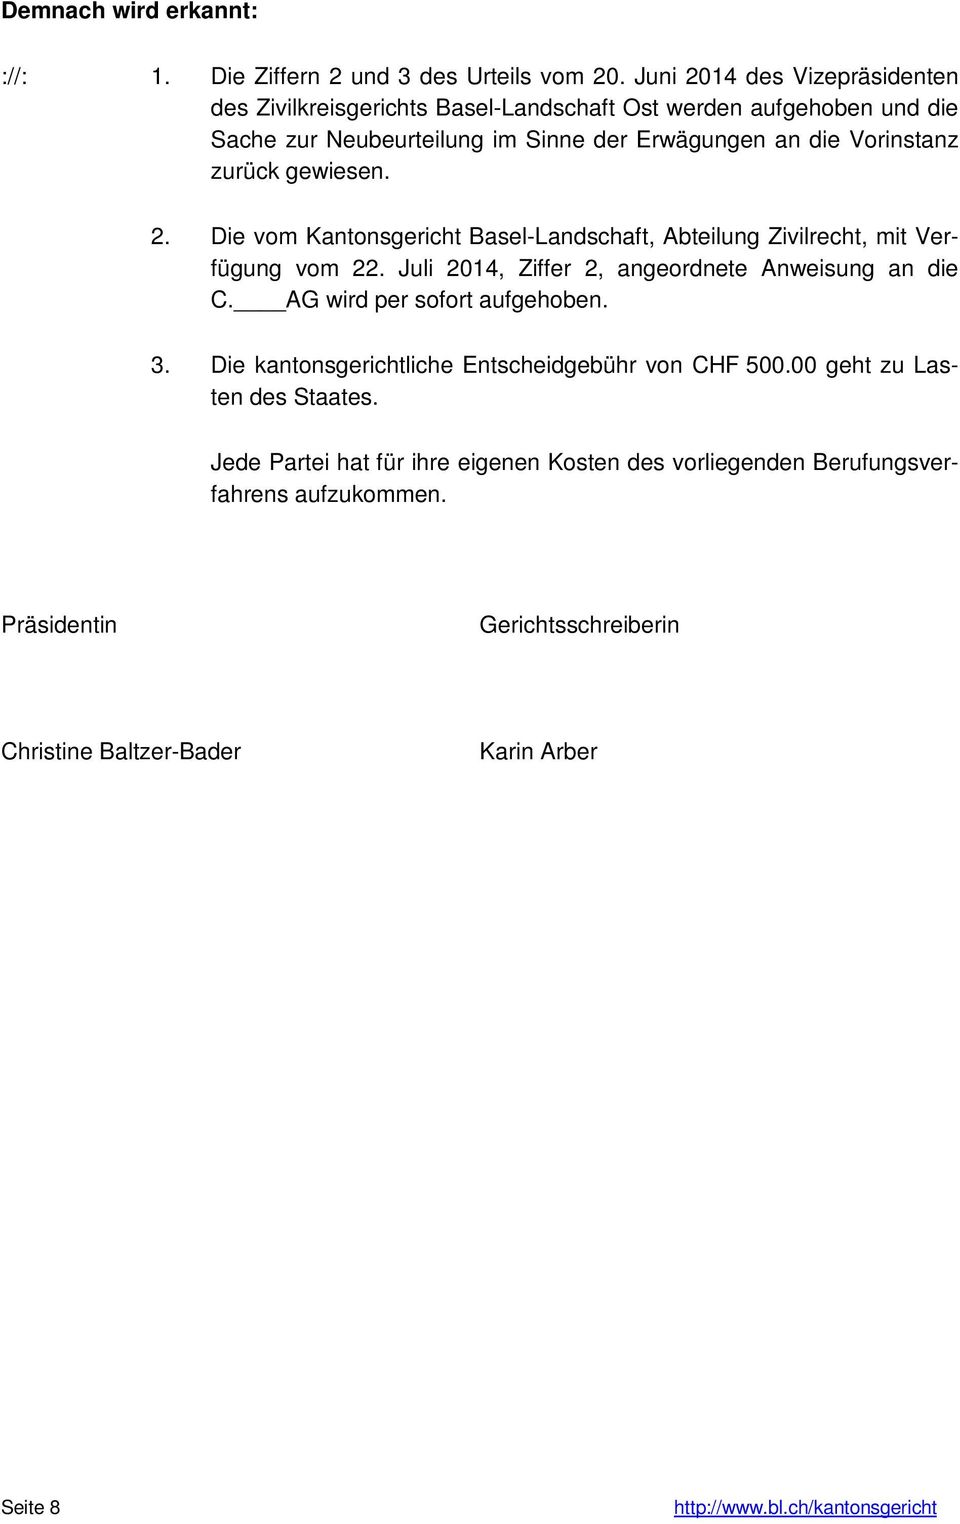 zurück gewiesen. 2. Die vom Kantonsgericht Basel-Landschaft, Abteilung Zivilrecht, mit Verfügung vom 22. Juli 2014, Ziffer 2, angeordnete Anweisung an die C.